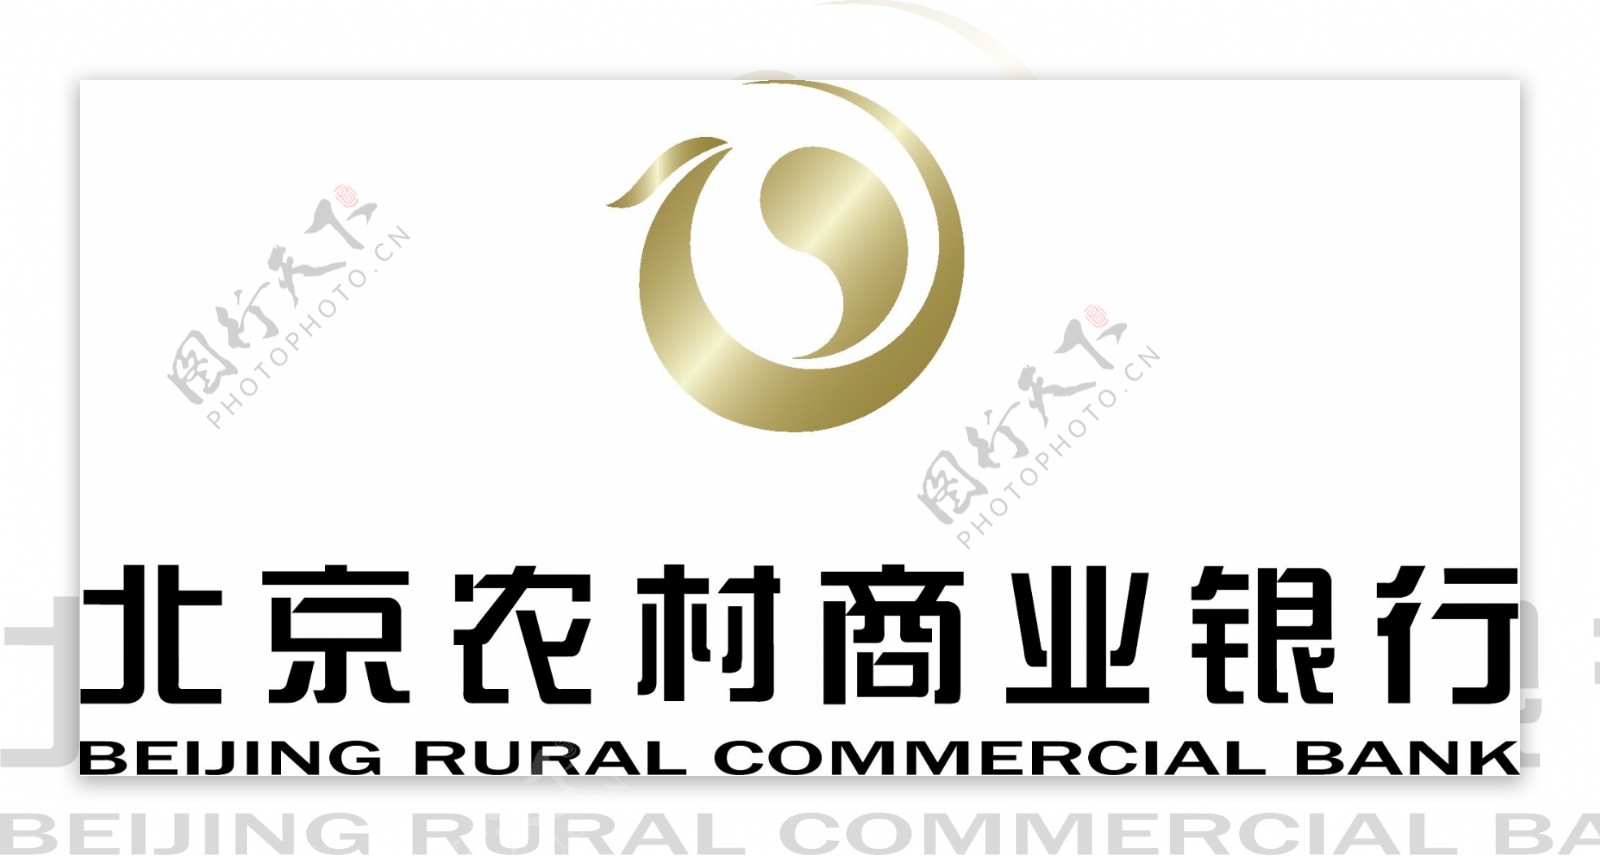 农村商业银行标志